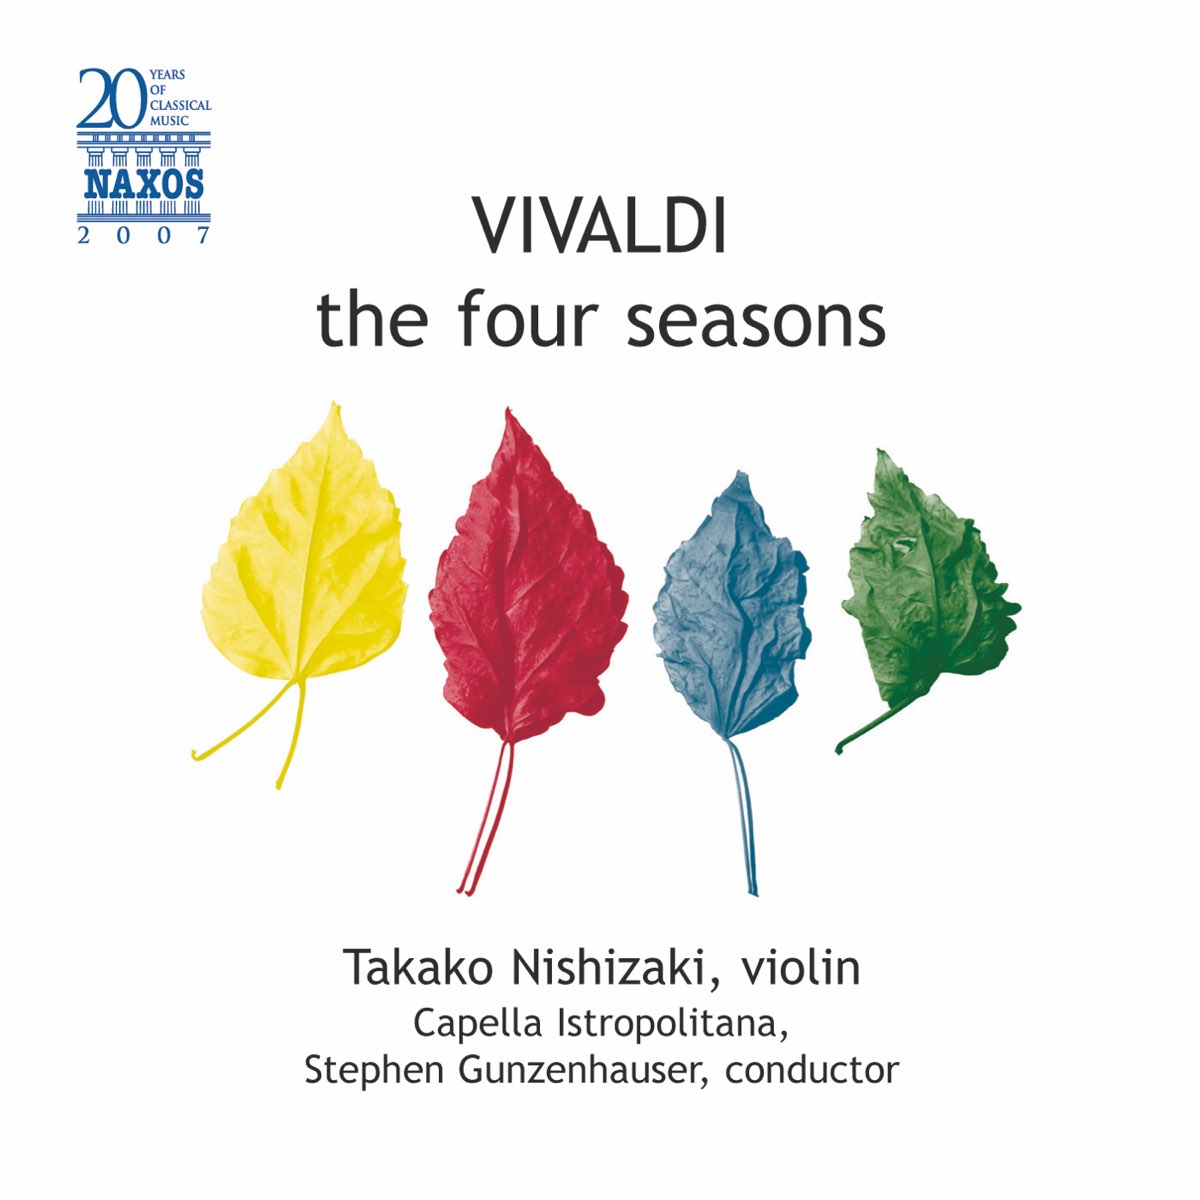 The four seasons violin. 4 Seasons Violin Concerto the. The four Seasons Violin Concerto in f. Perlman Vivaldi 4 Seasons.